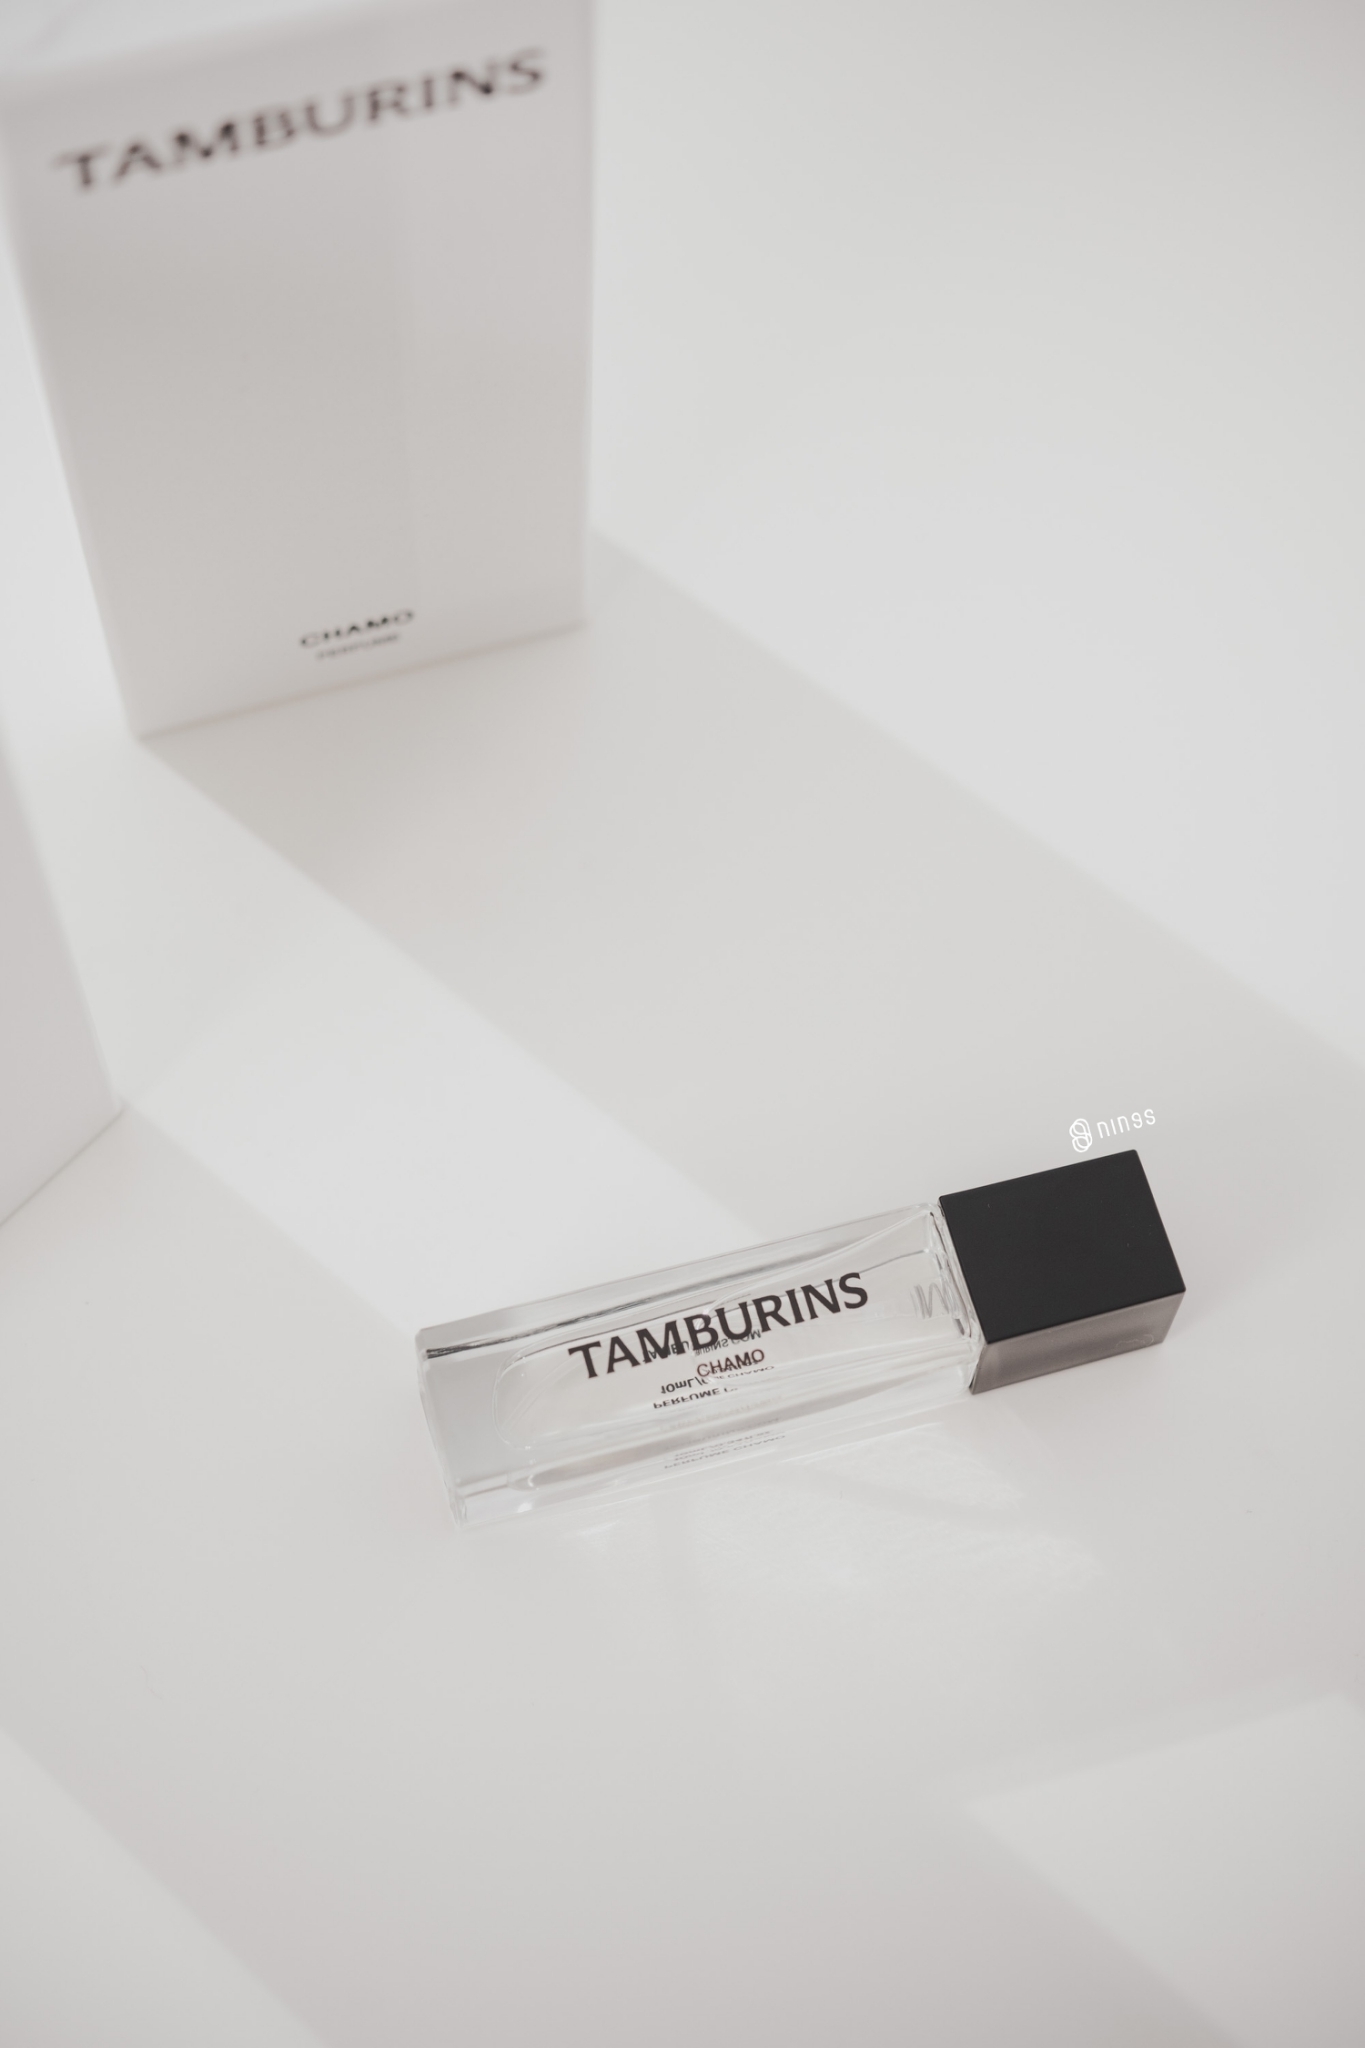 TAMBURINS 新版香水系列隨身香水11ML